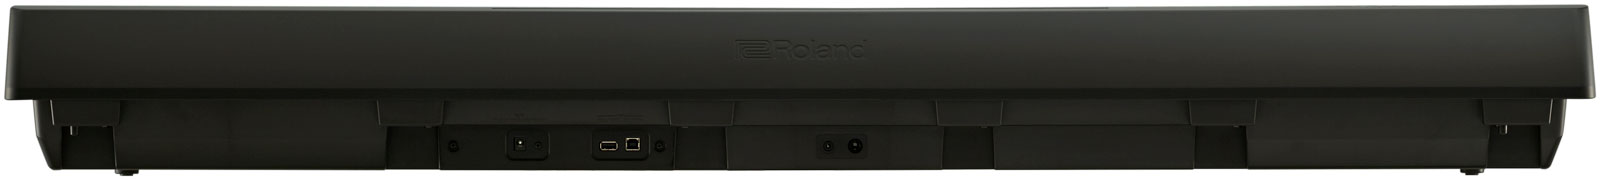 Roland FP-10 Stagepiano Bundle + Stand, Hocker,Kopfhörer